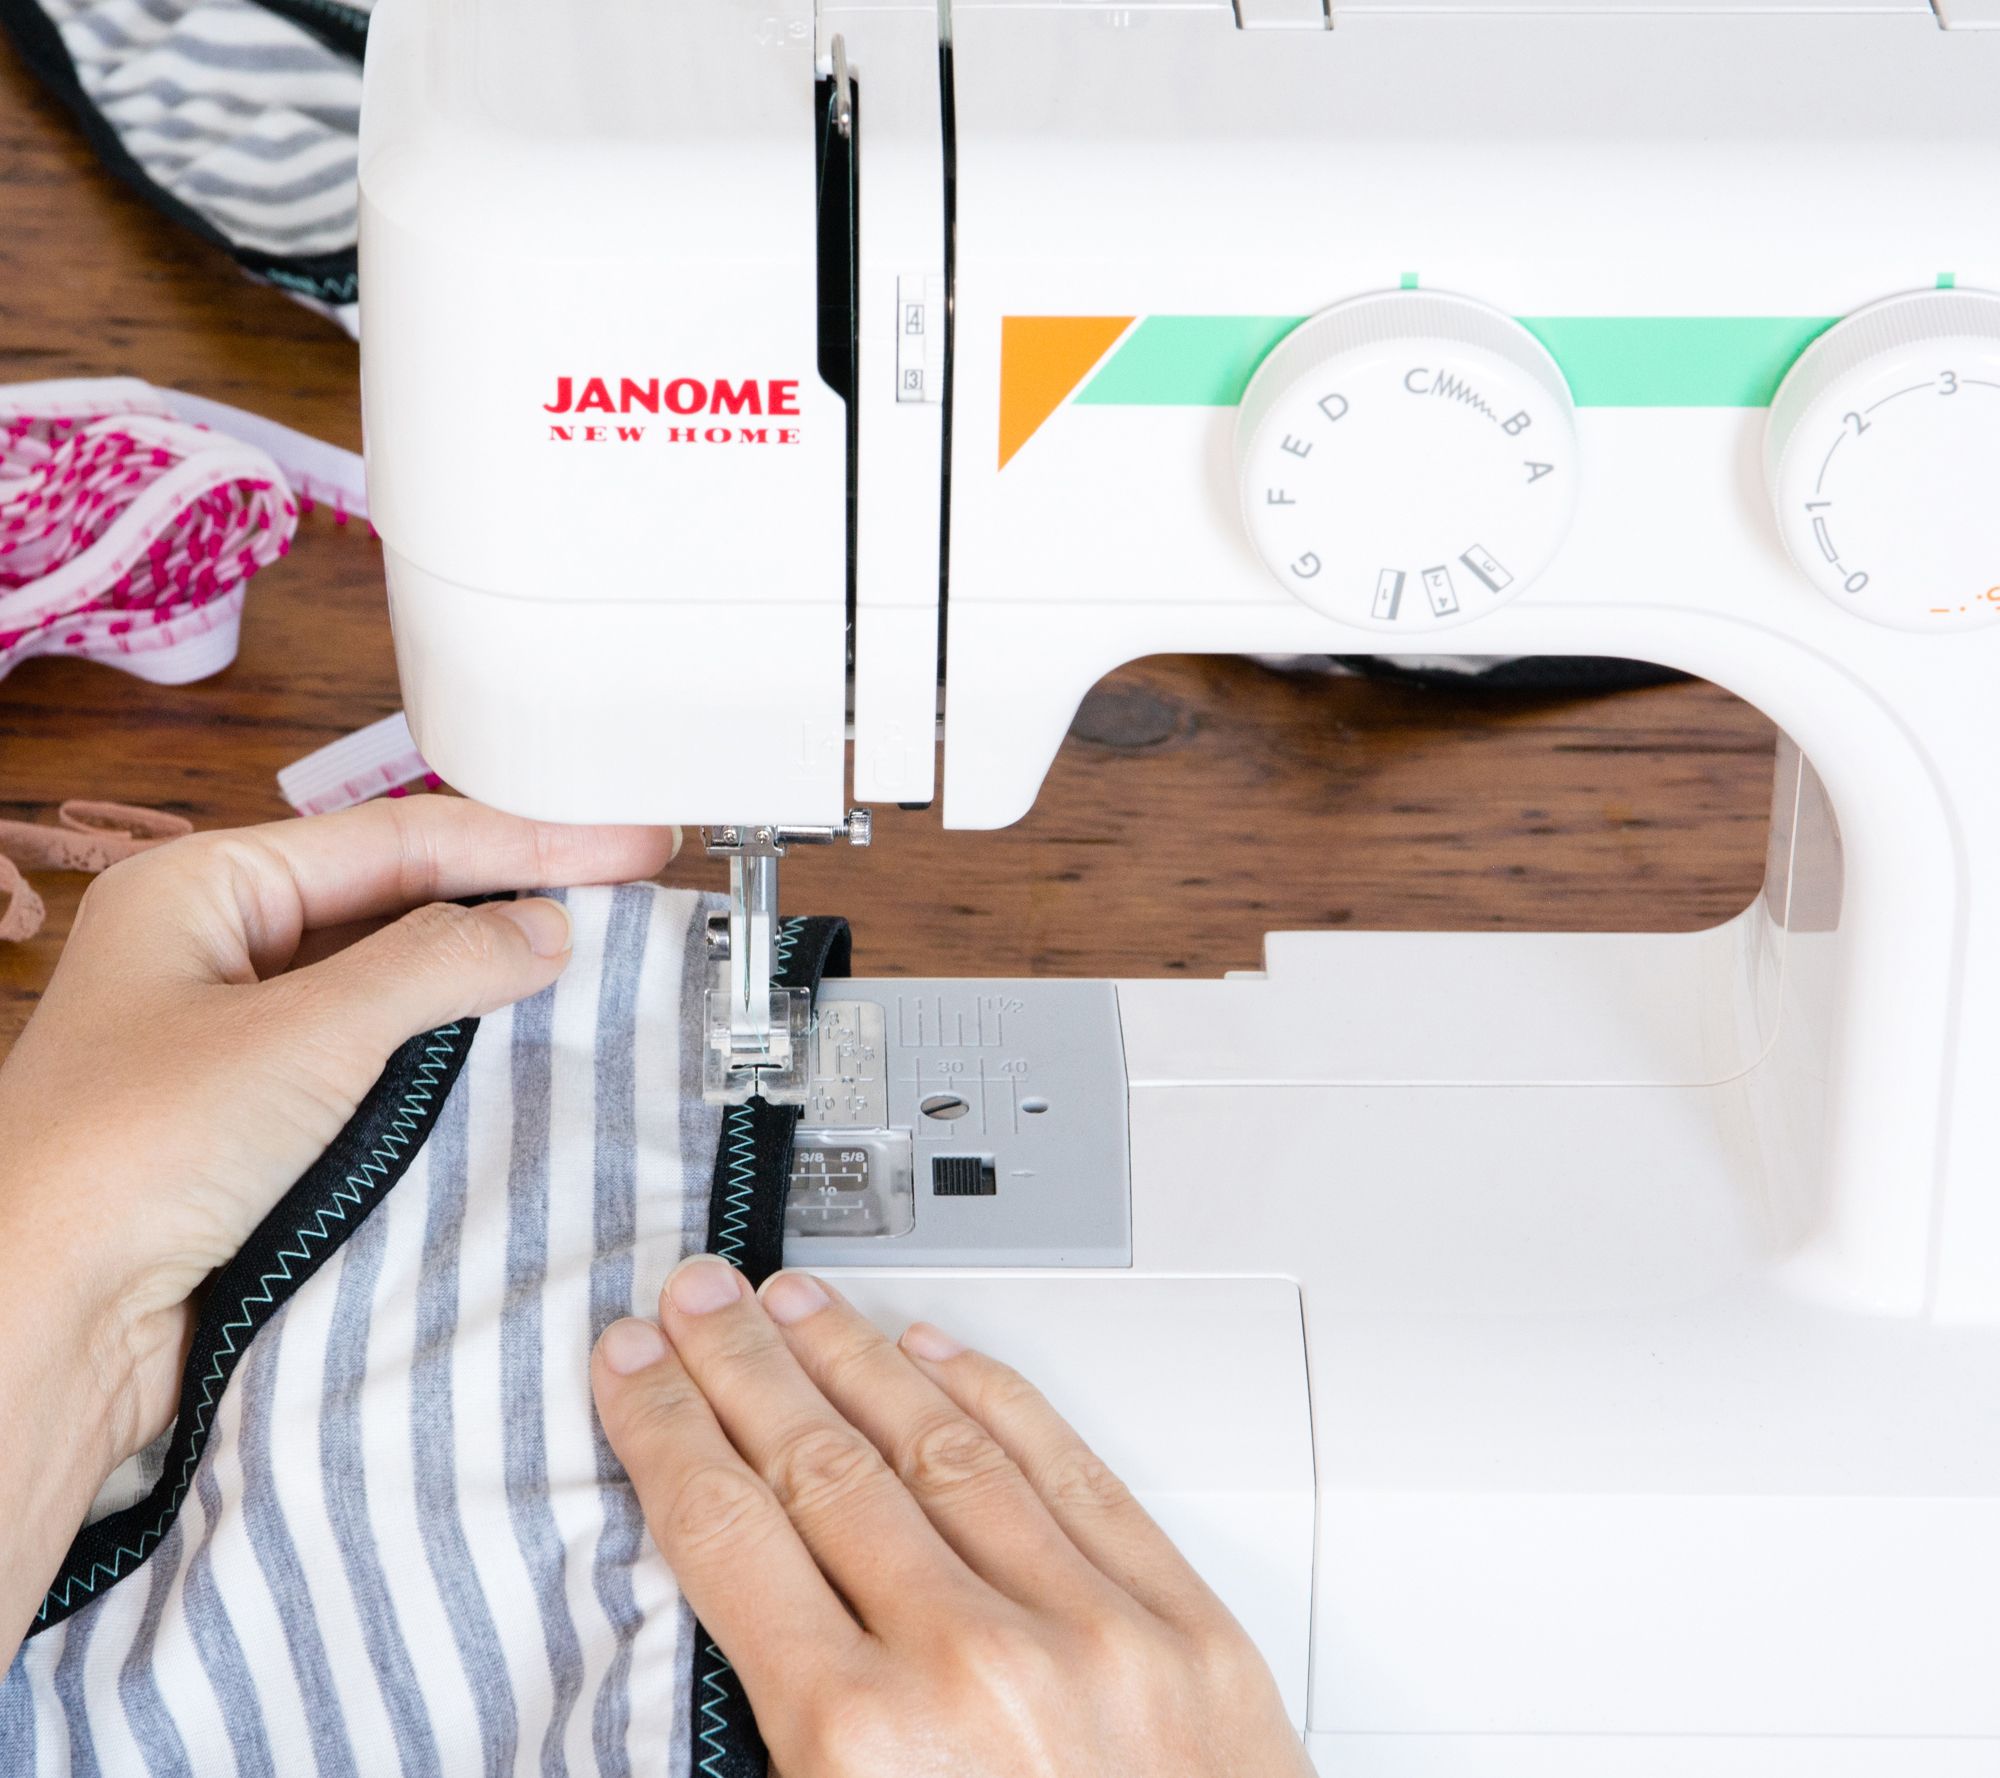 Easy 15. Швейная машина Janome Sew easy. 4 Step buttonhole швейная машина. Easy Stitch швейная машинка. Швейная машинка fappyco Stitch length.